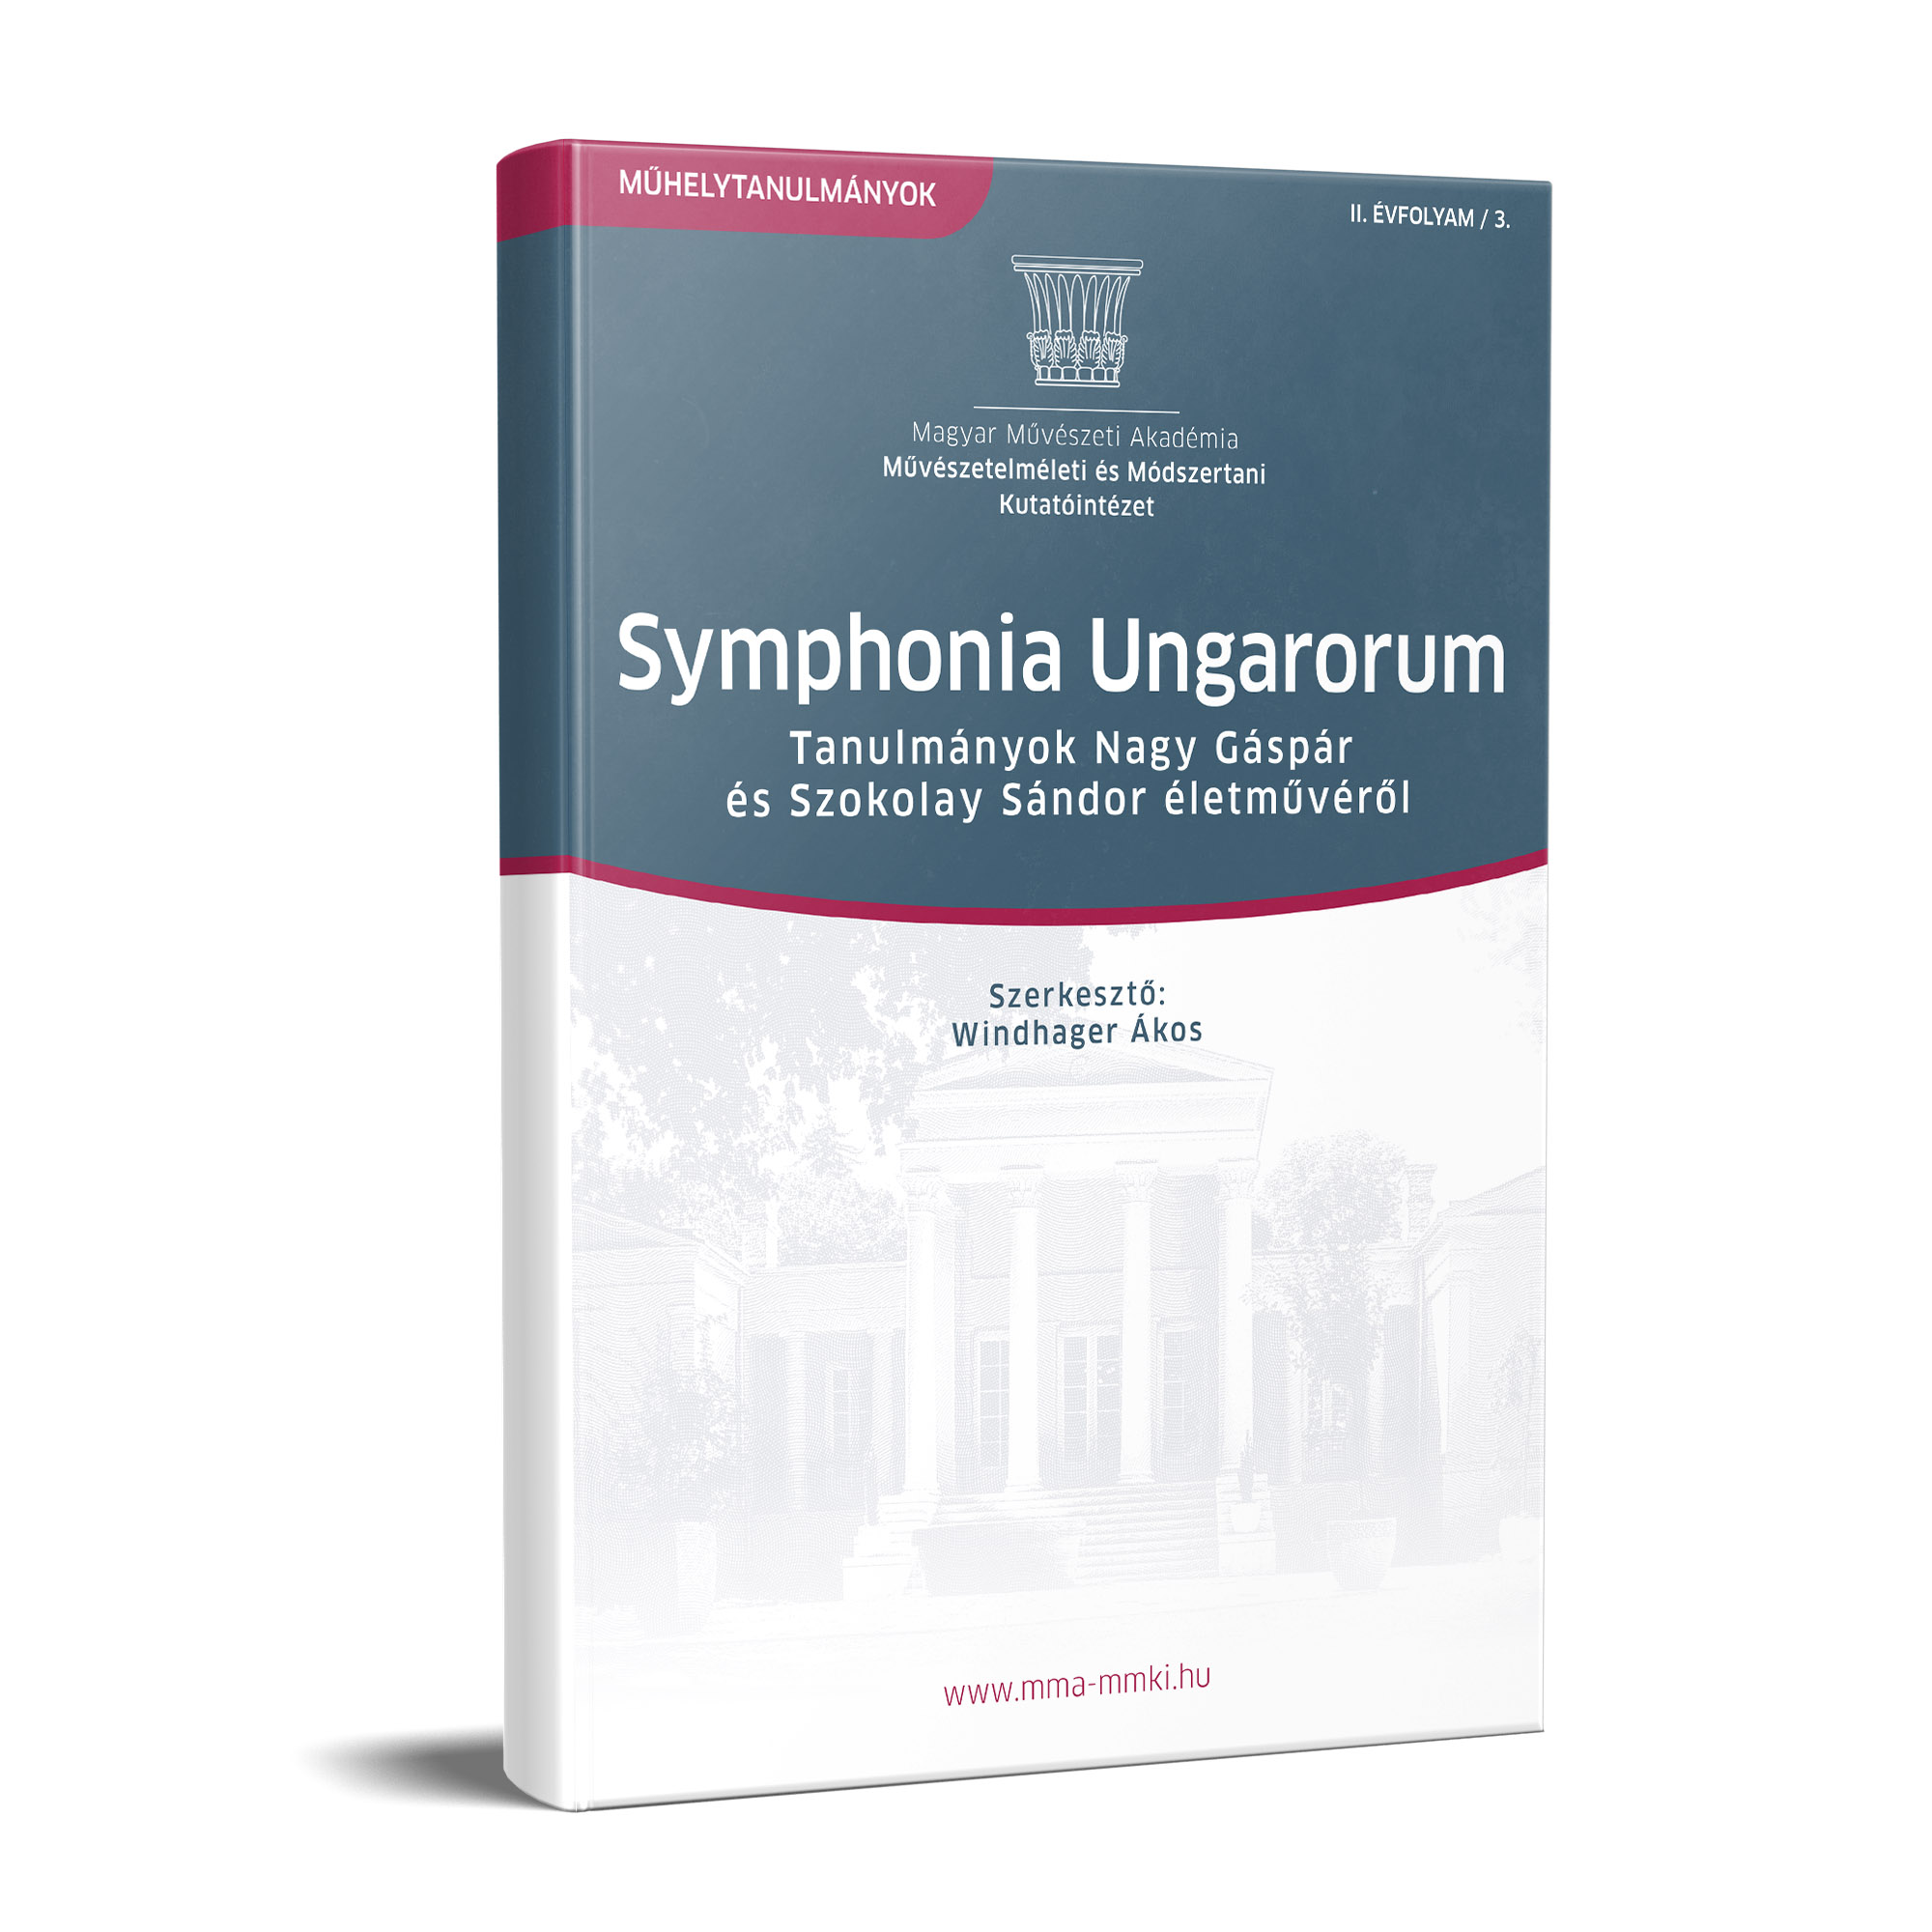 Symphonia Ungarorum – Tanulmányok Nagy Gáspár és Szokolay Sándor életművéről